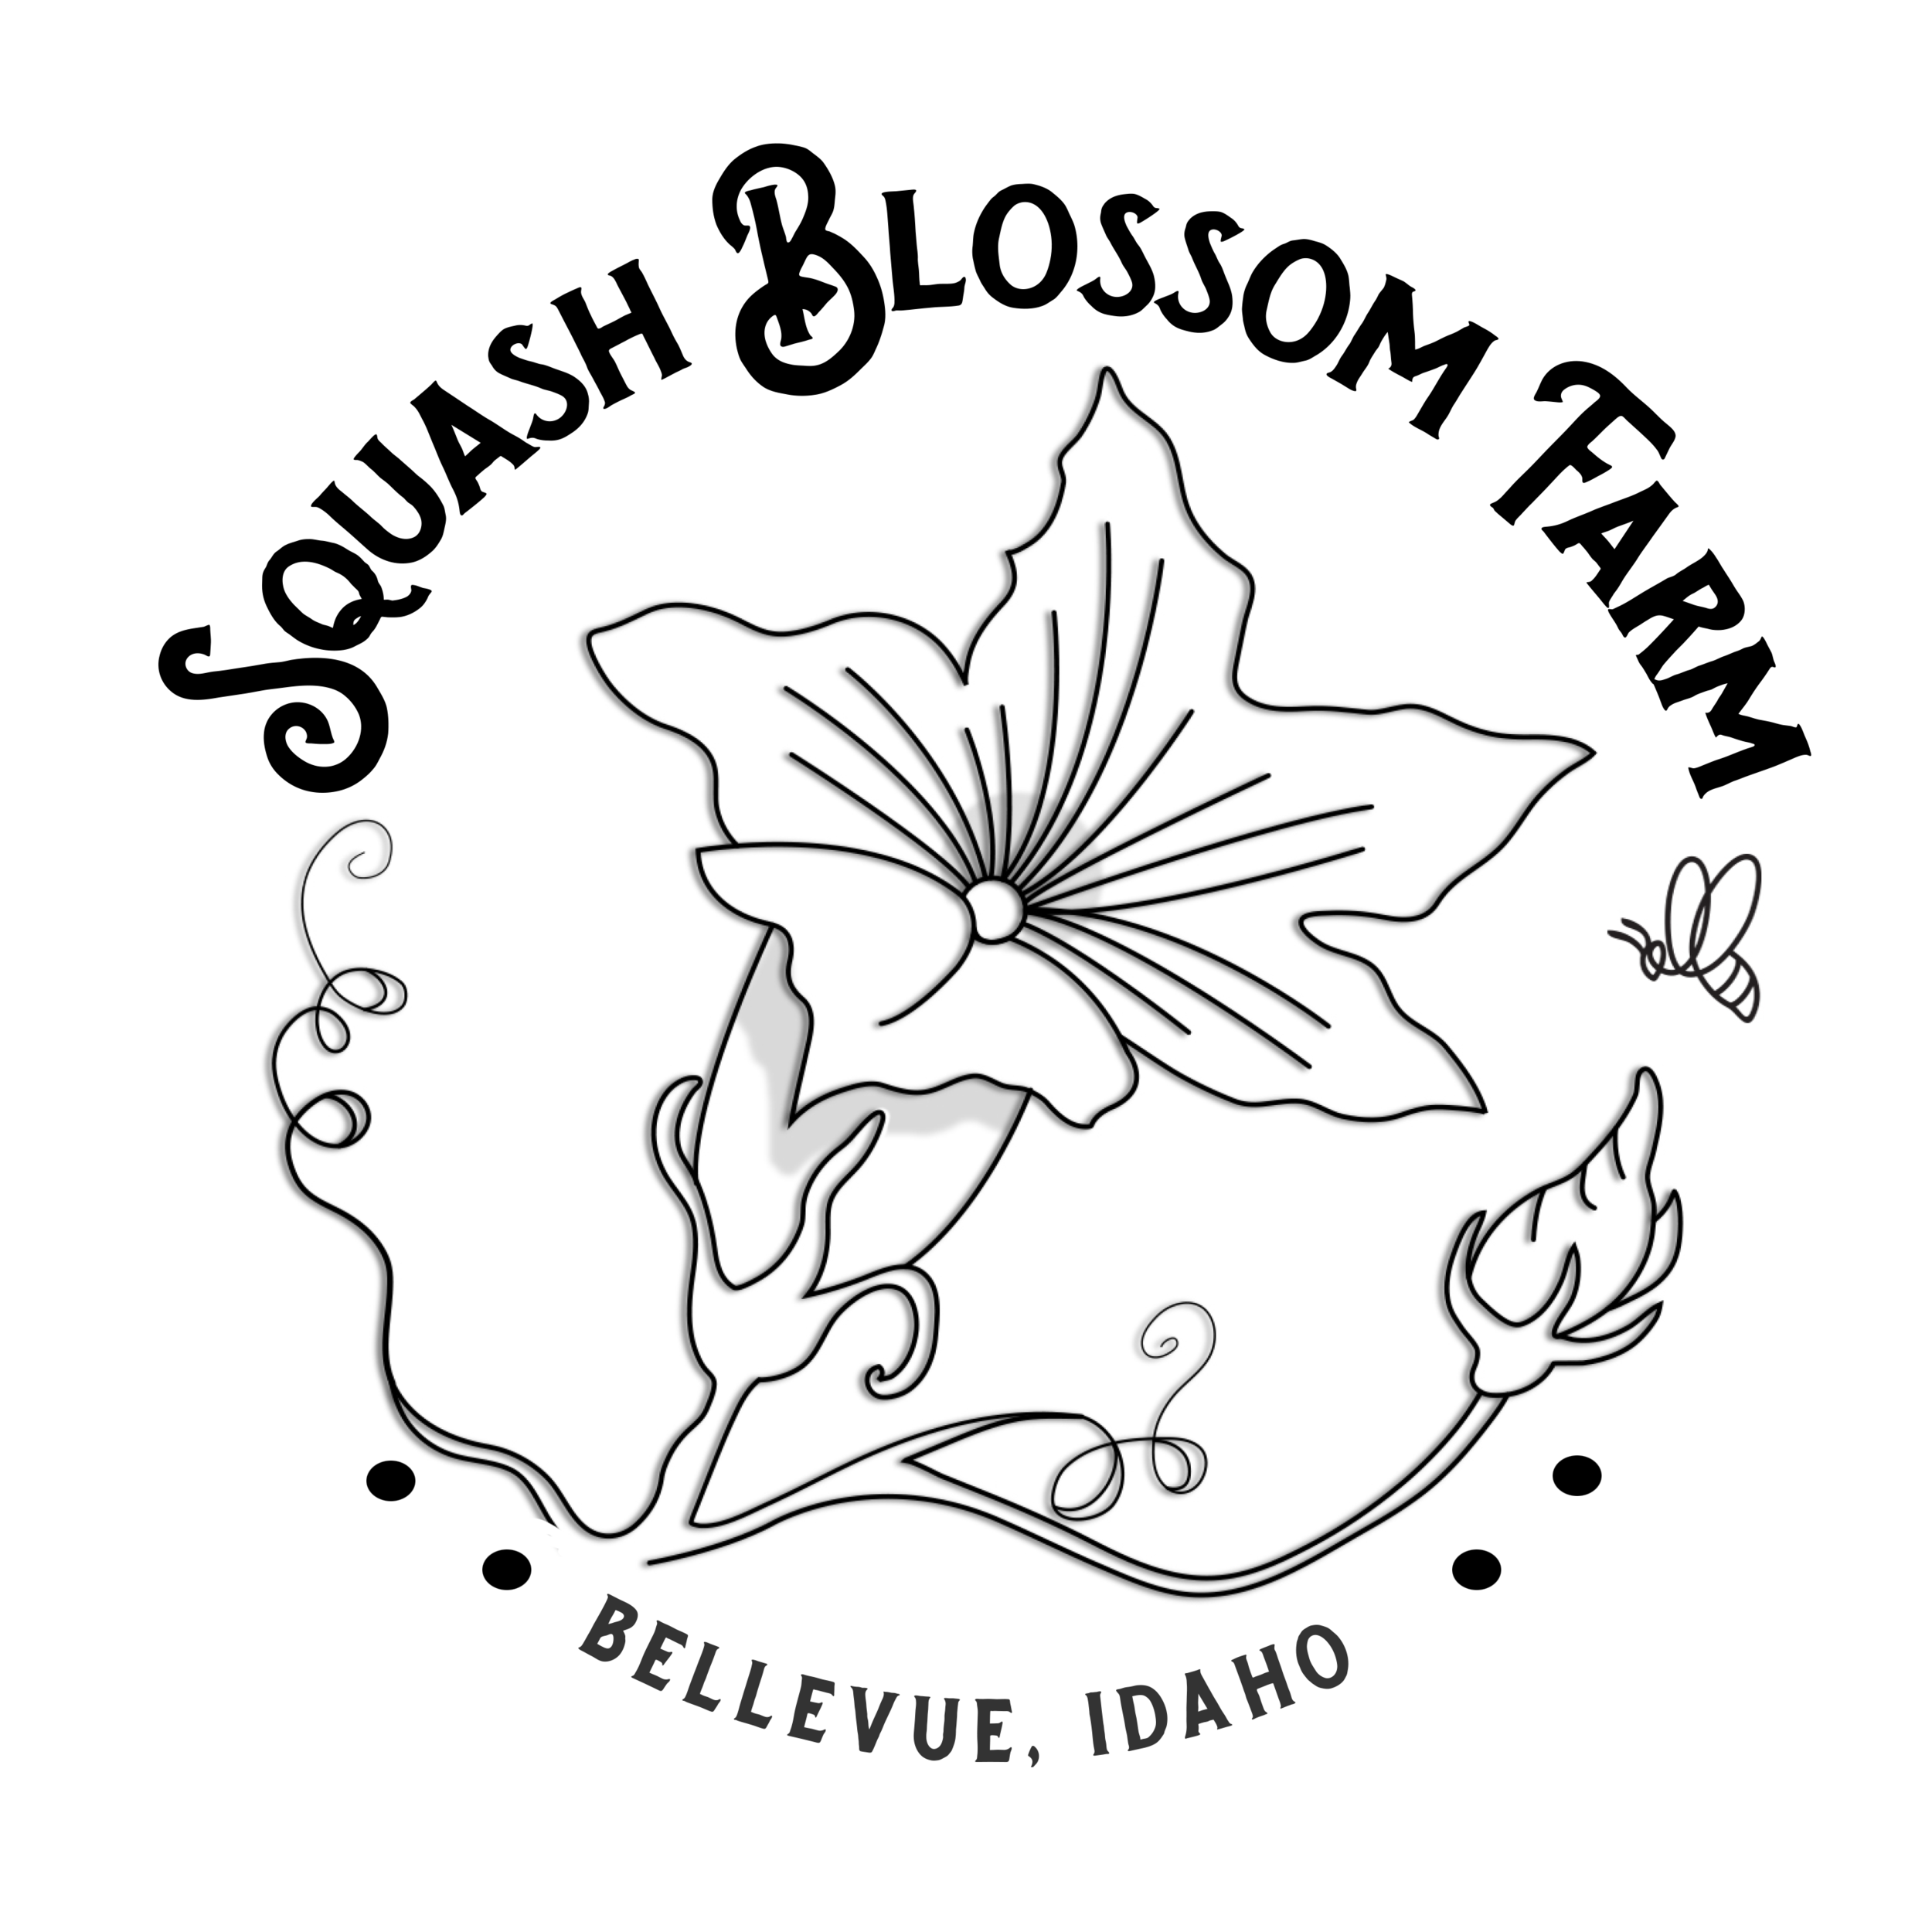 Squash Blossom Farm